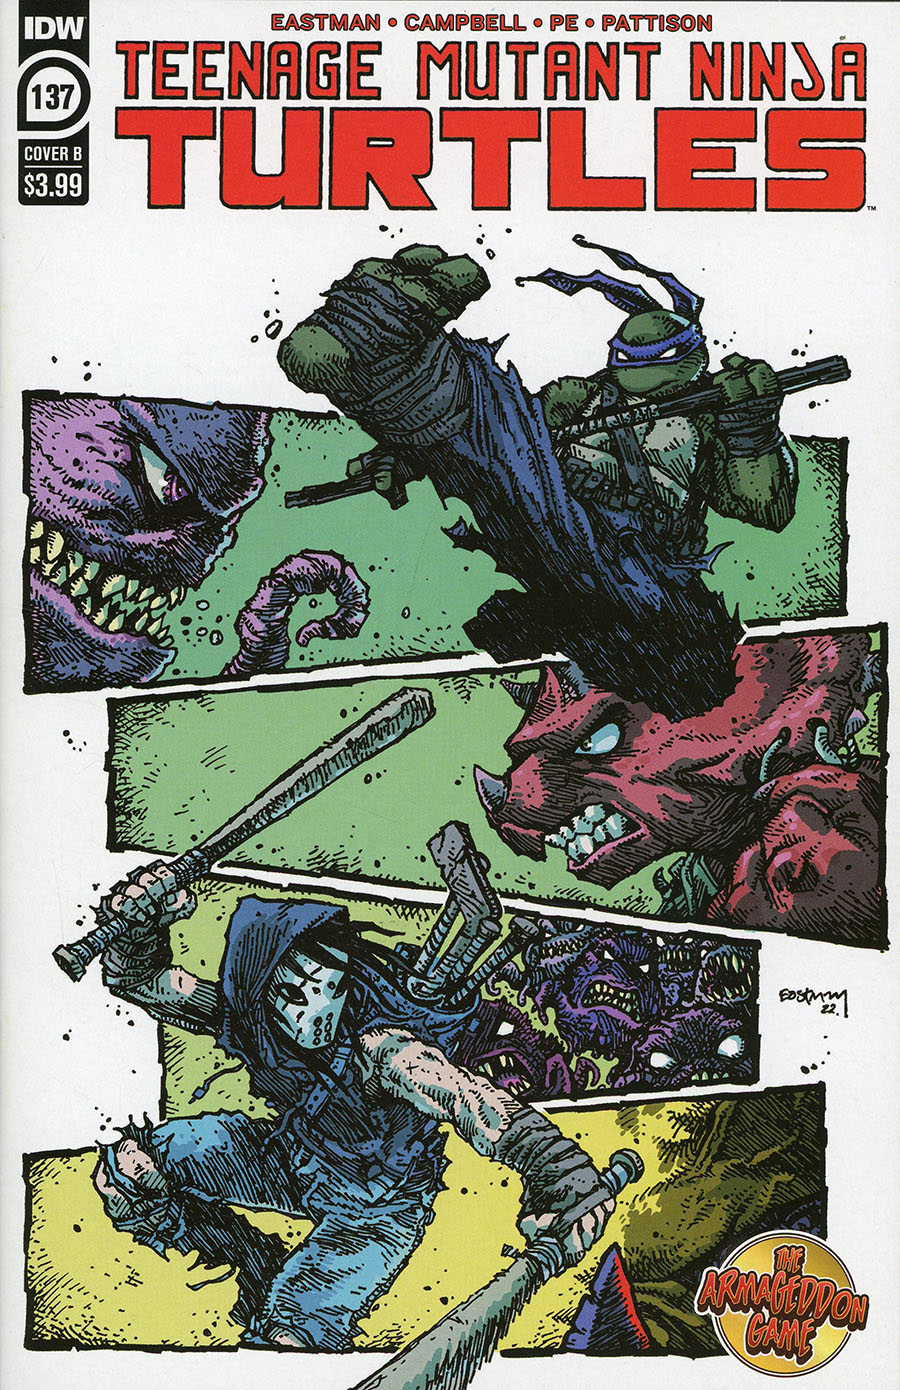 Teenage Mutant Ninja Turtles Vol 5 #137 Cover B Variant Kevin Eastman & Sophie Campbell Cover